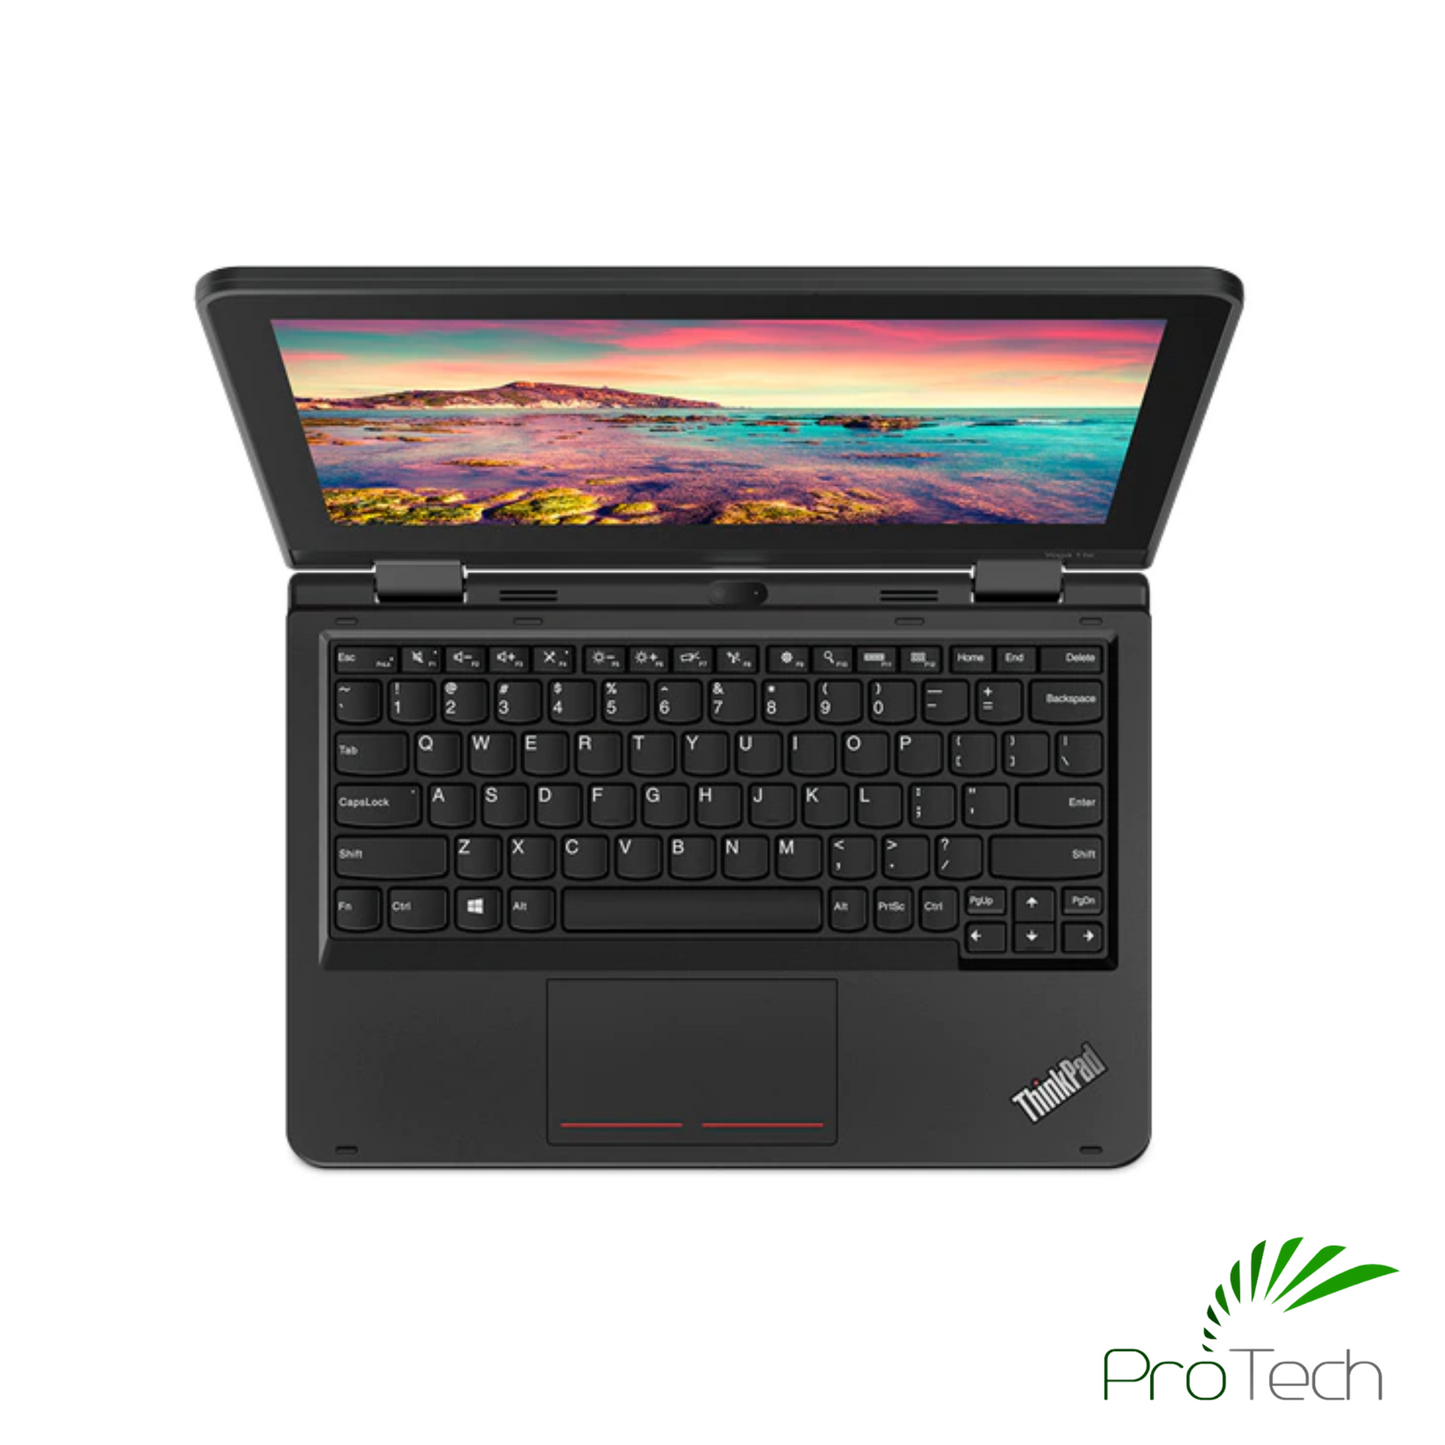 Lenovo ThinkPad 11e Yoga x360 | Celeron N4000 | 4GB RAM | 128GB SSD